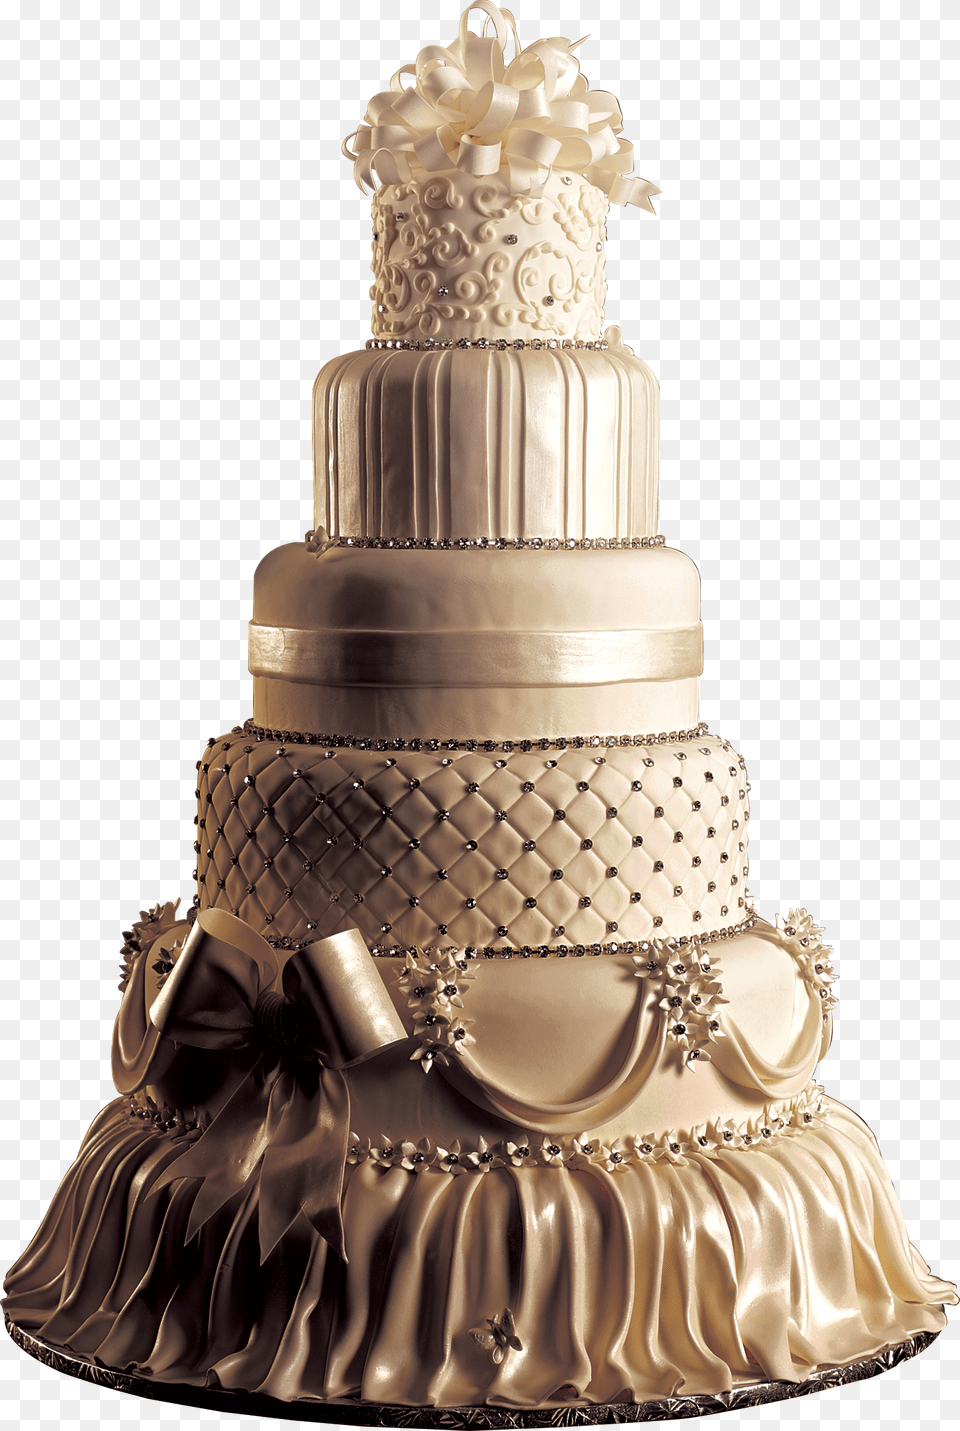 Cake 2 Wedding Cake Design, Dessert, Food, Wedding Cake Free Png Download